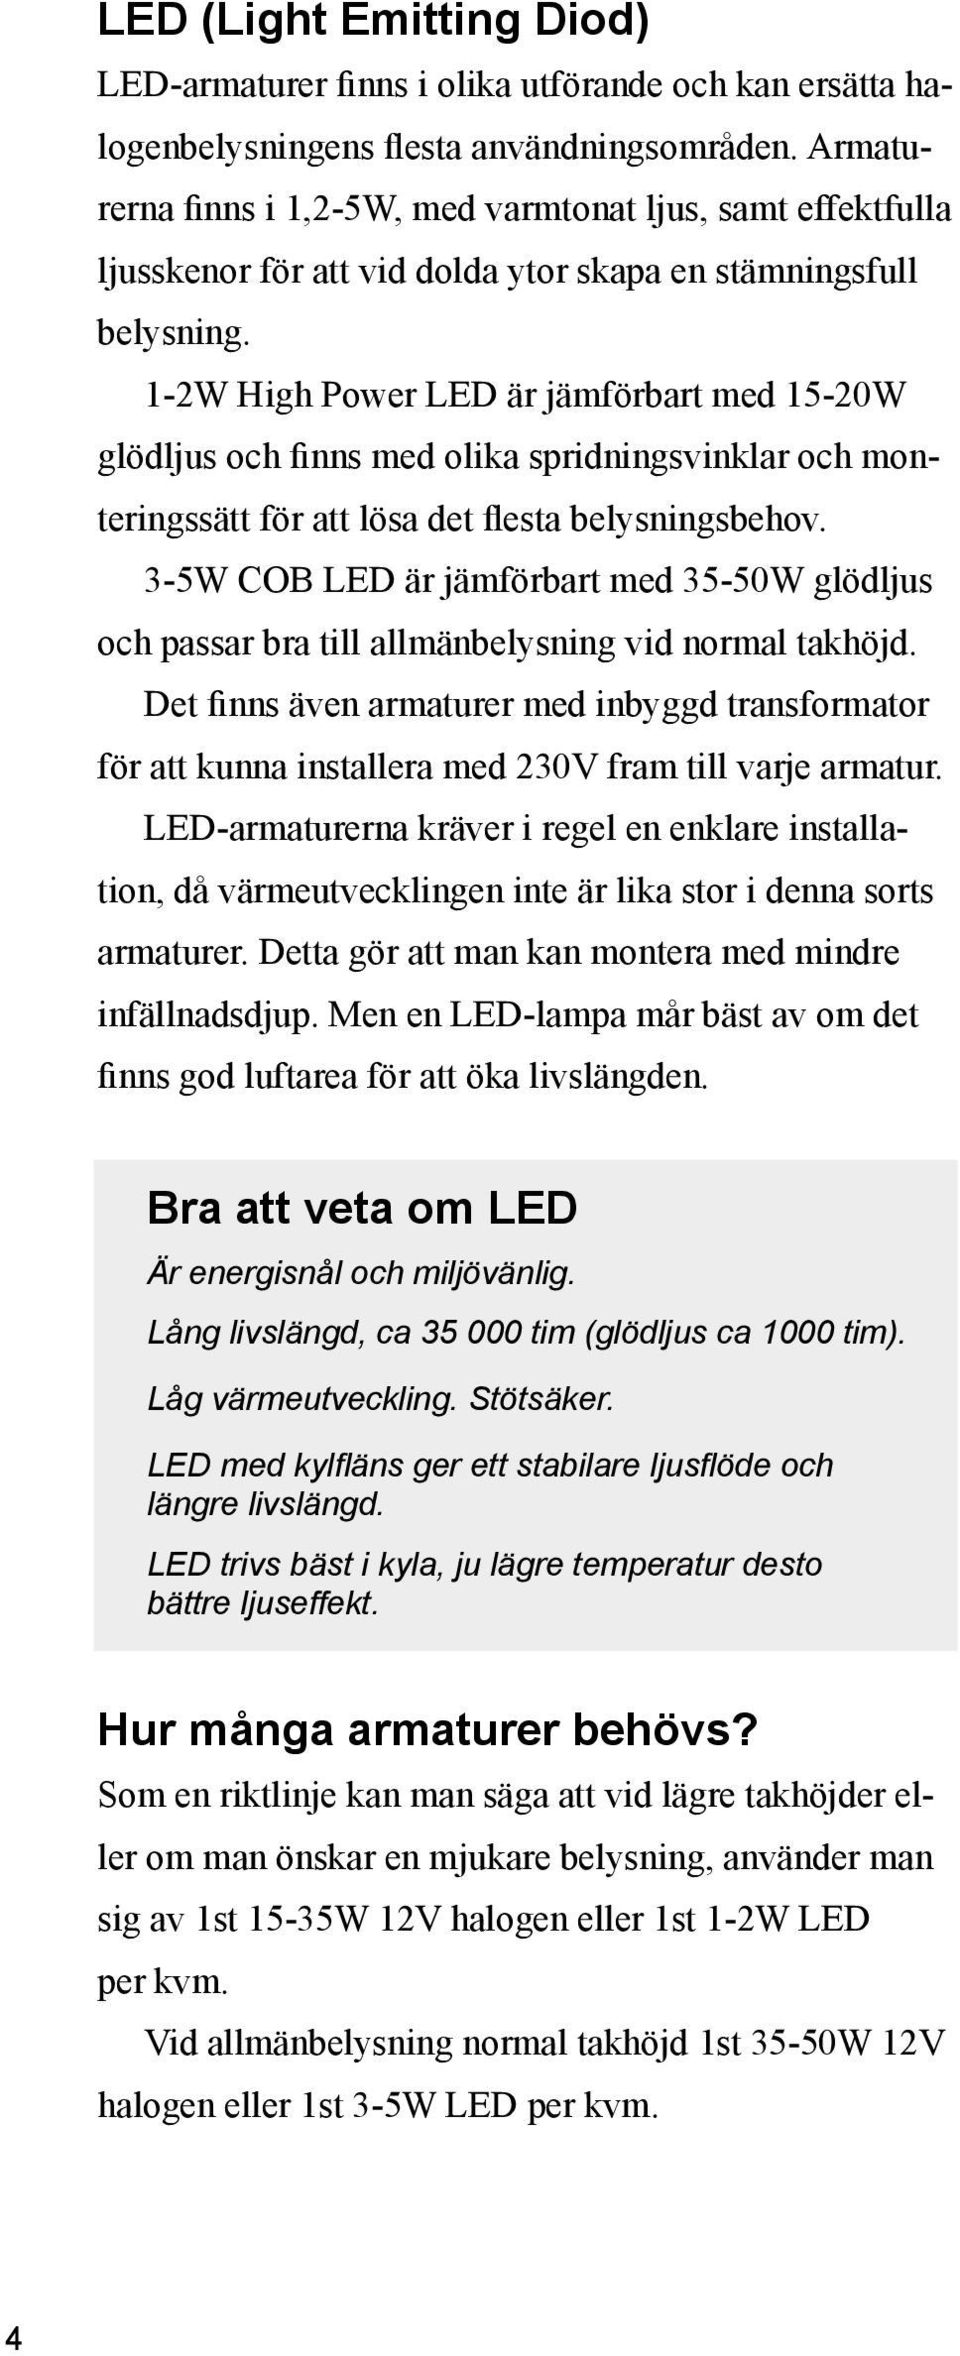 1-2W High Power LED är jämförbart med 15-20W glödljus och finns med olika spridningsvinklar och monteringssätt för att lösa det flesta belysningsbehov.